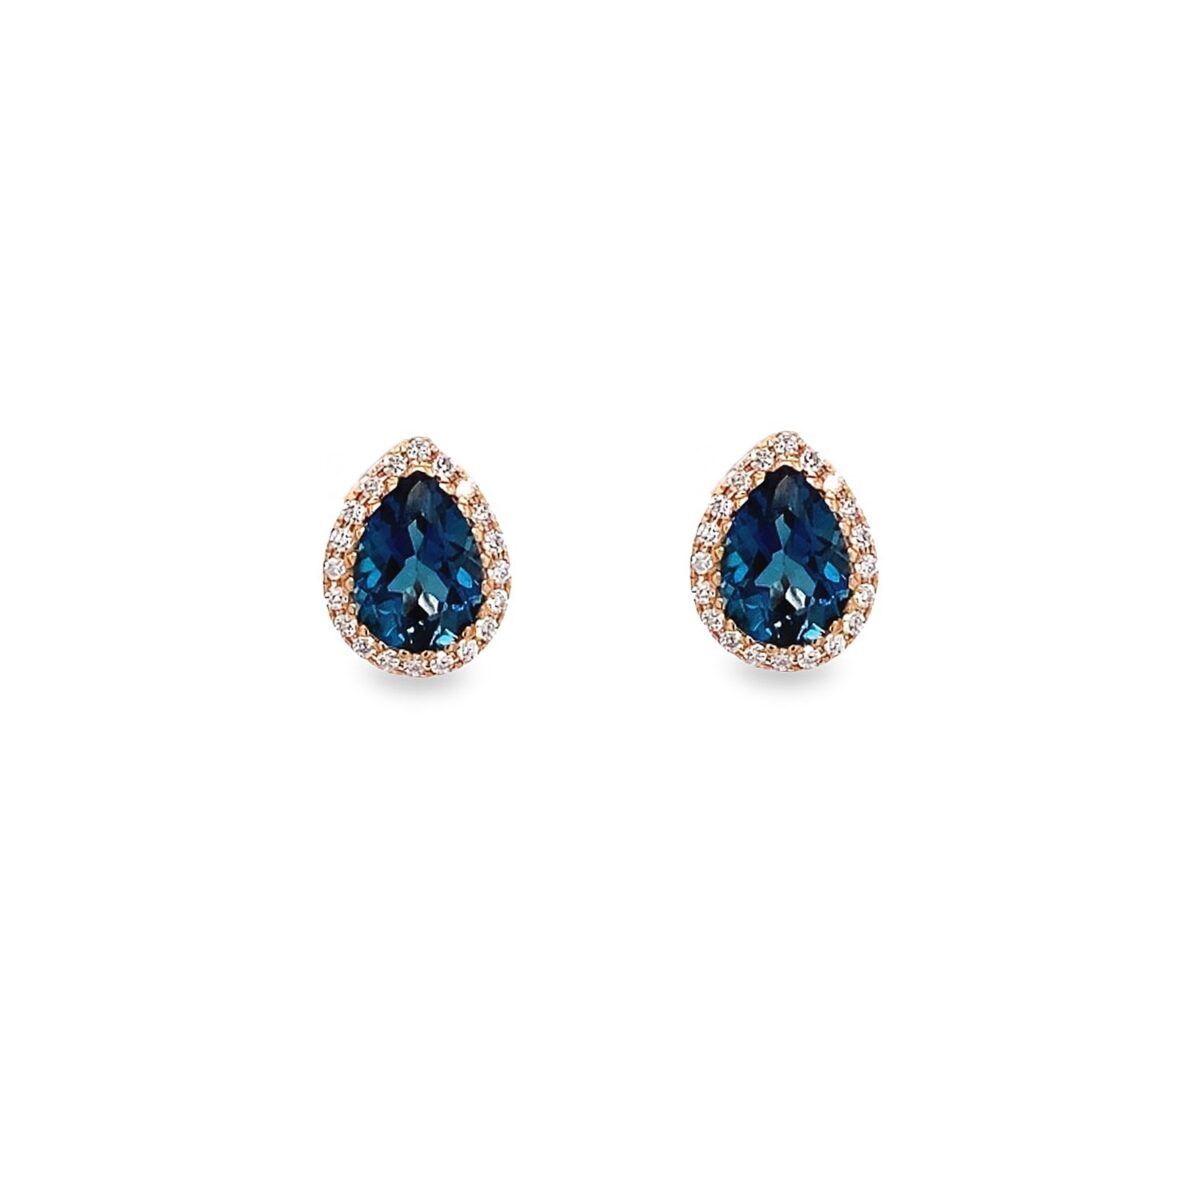 Jewellers - Σκουλαρίκια με Μπλε Τοπάζι και Διαμάντια